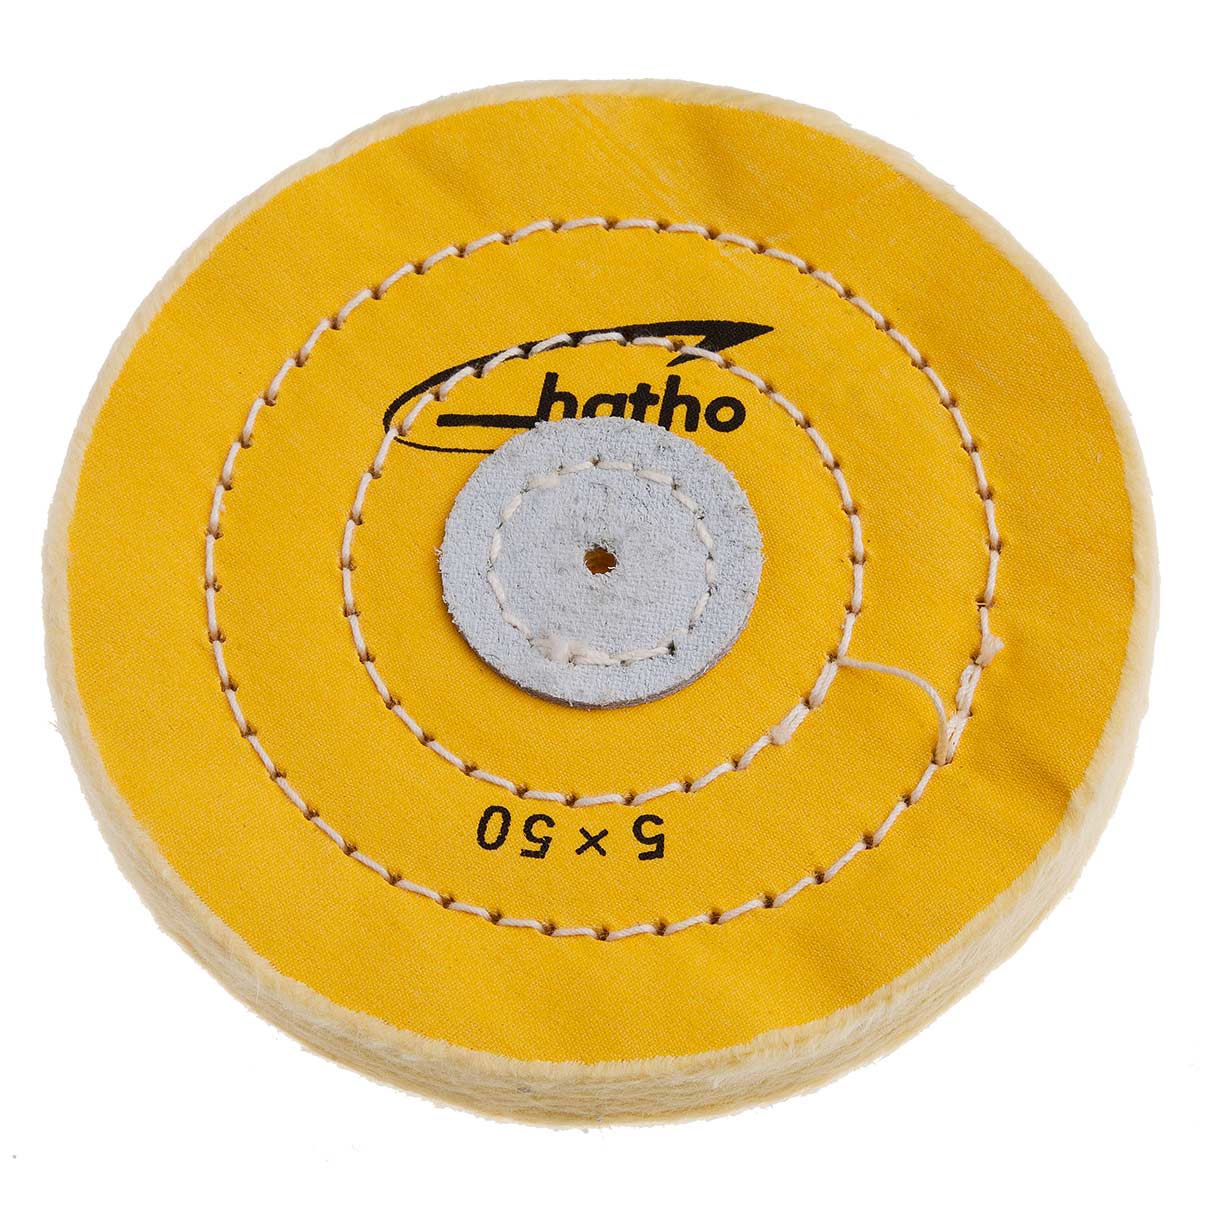 Hatho Mira polissoir, coton imprégné, cousu, jaune, Ø 125 x 15 mm, 50 couches